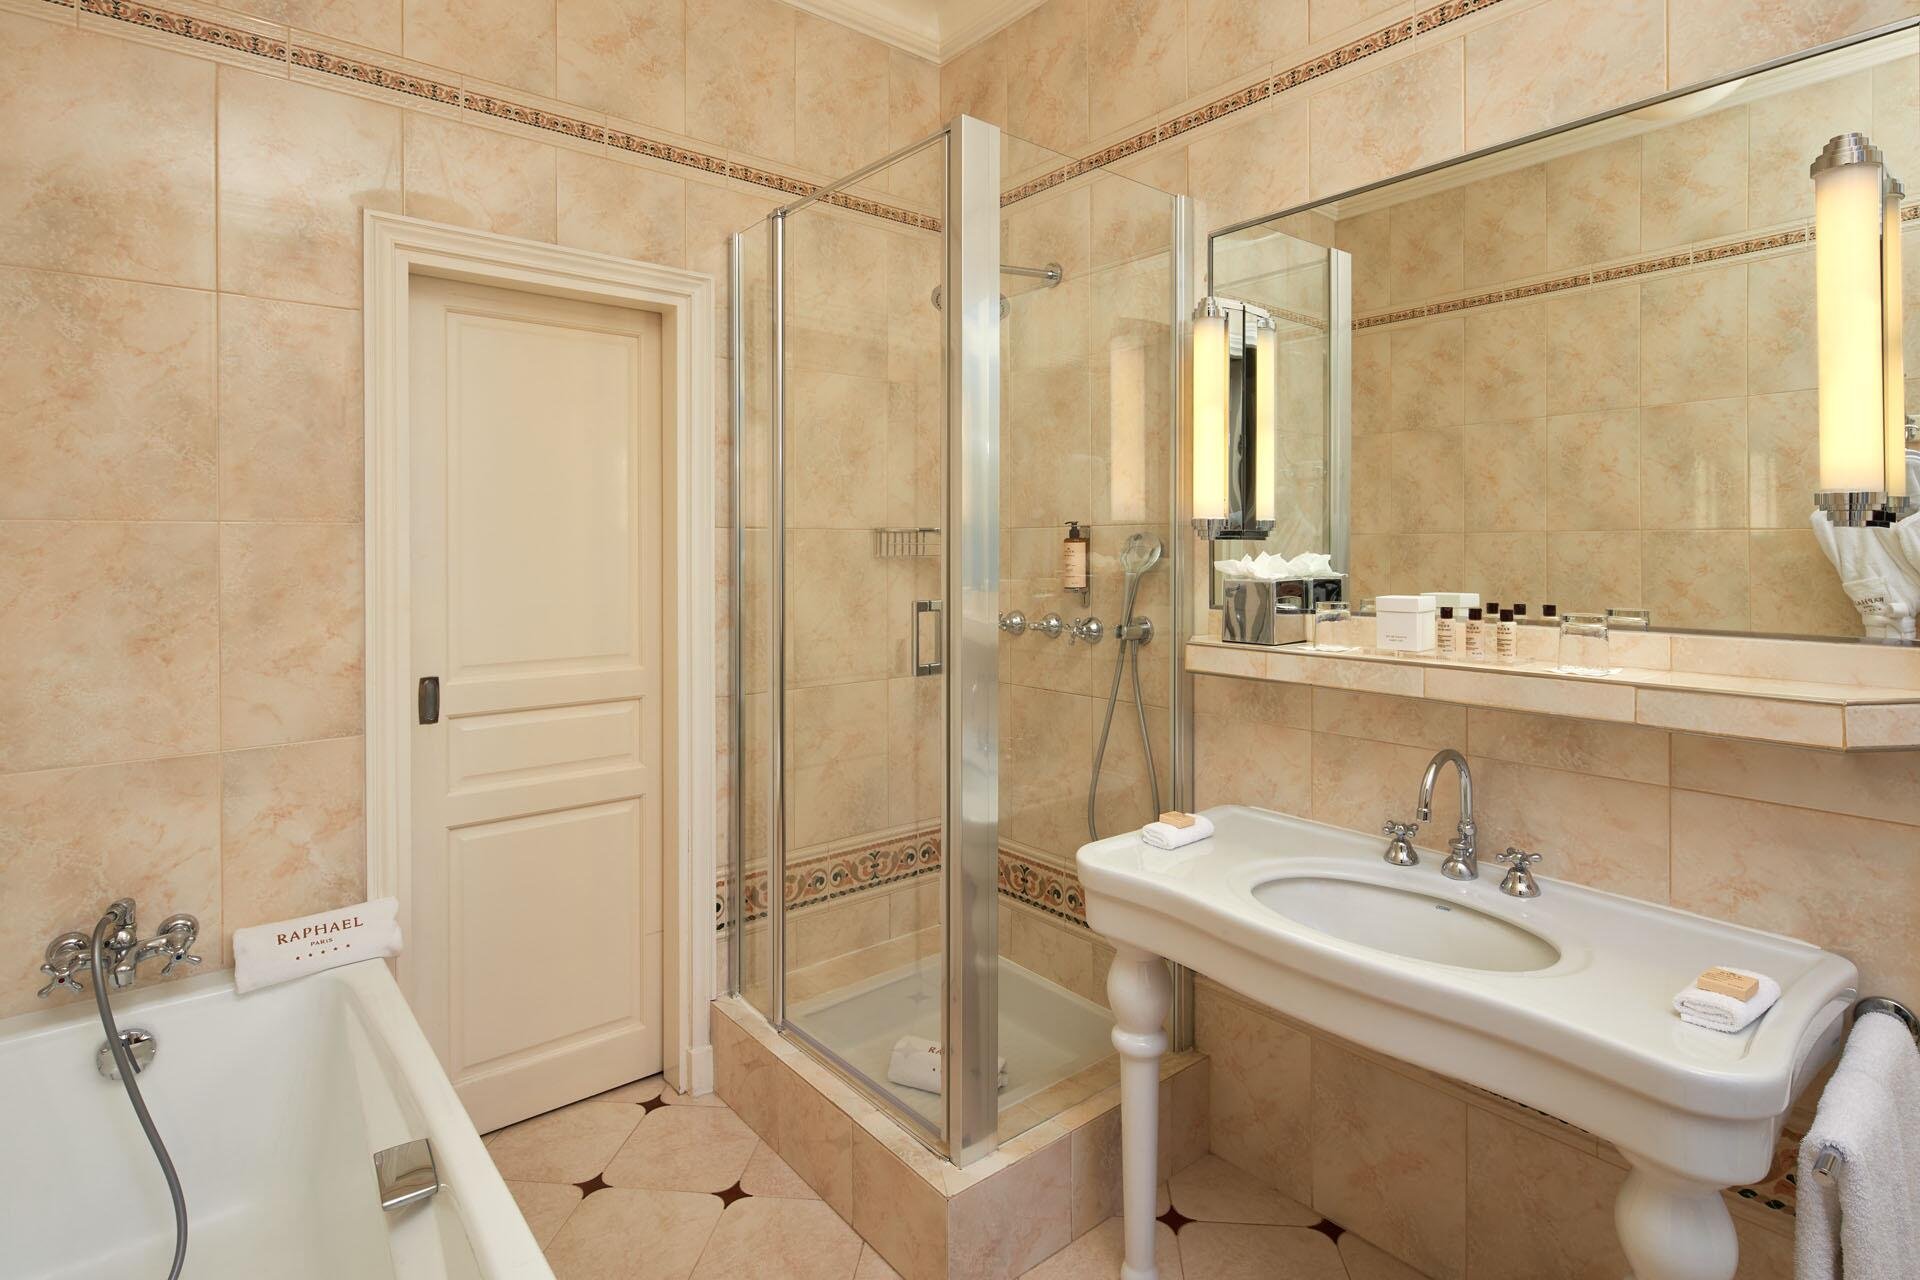 Hotel Raphael Paris Junior Suite - Bathroom